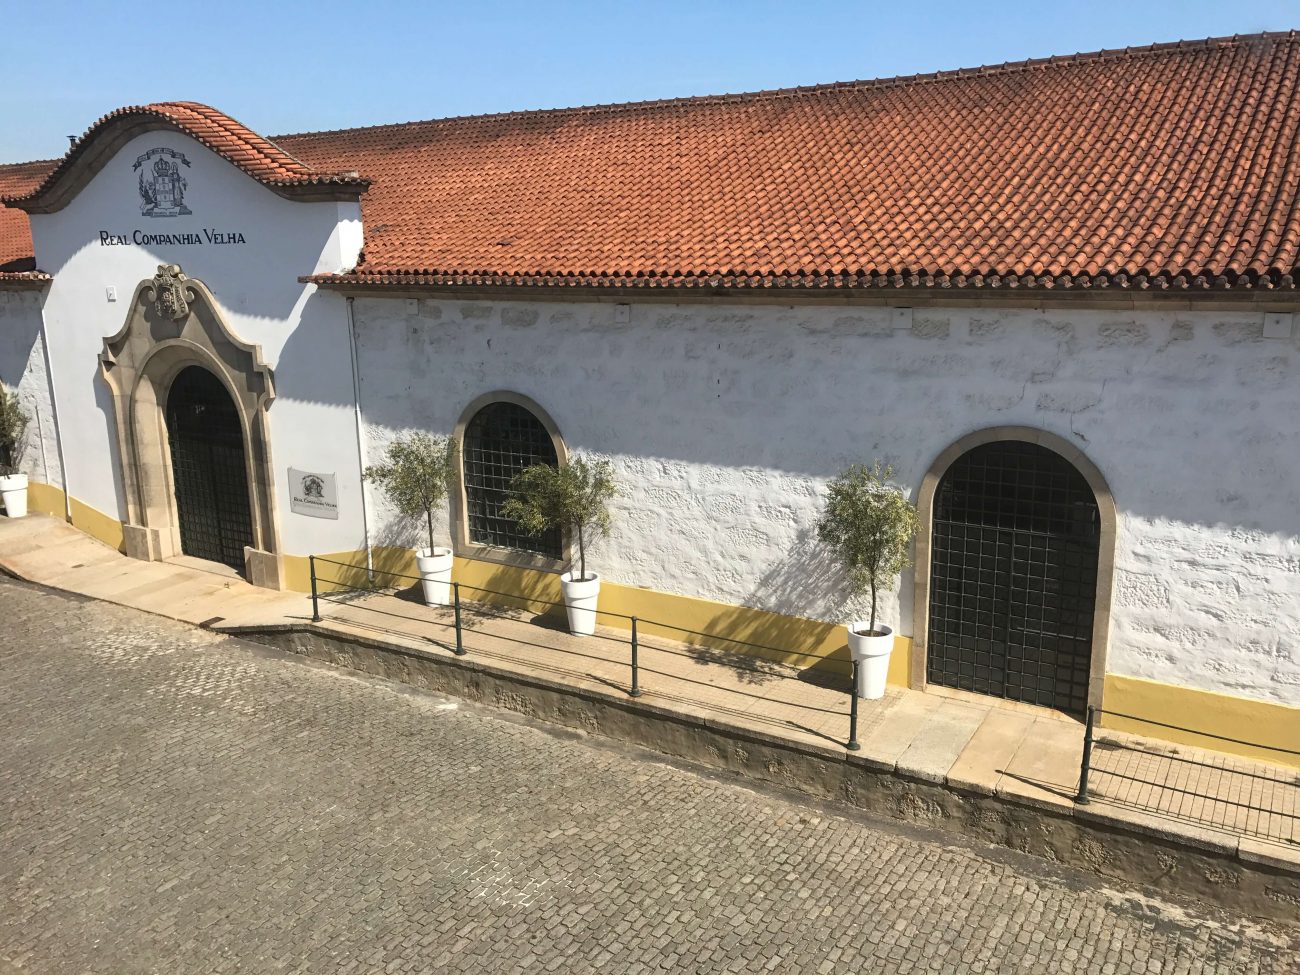 Portweinunternehmen Real Companha Velha in Vila Nova de Gaia